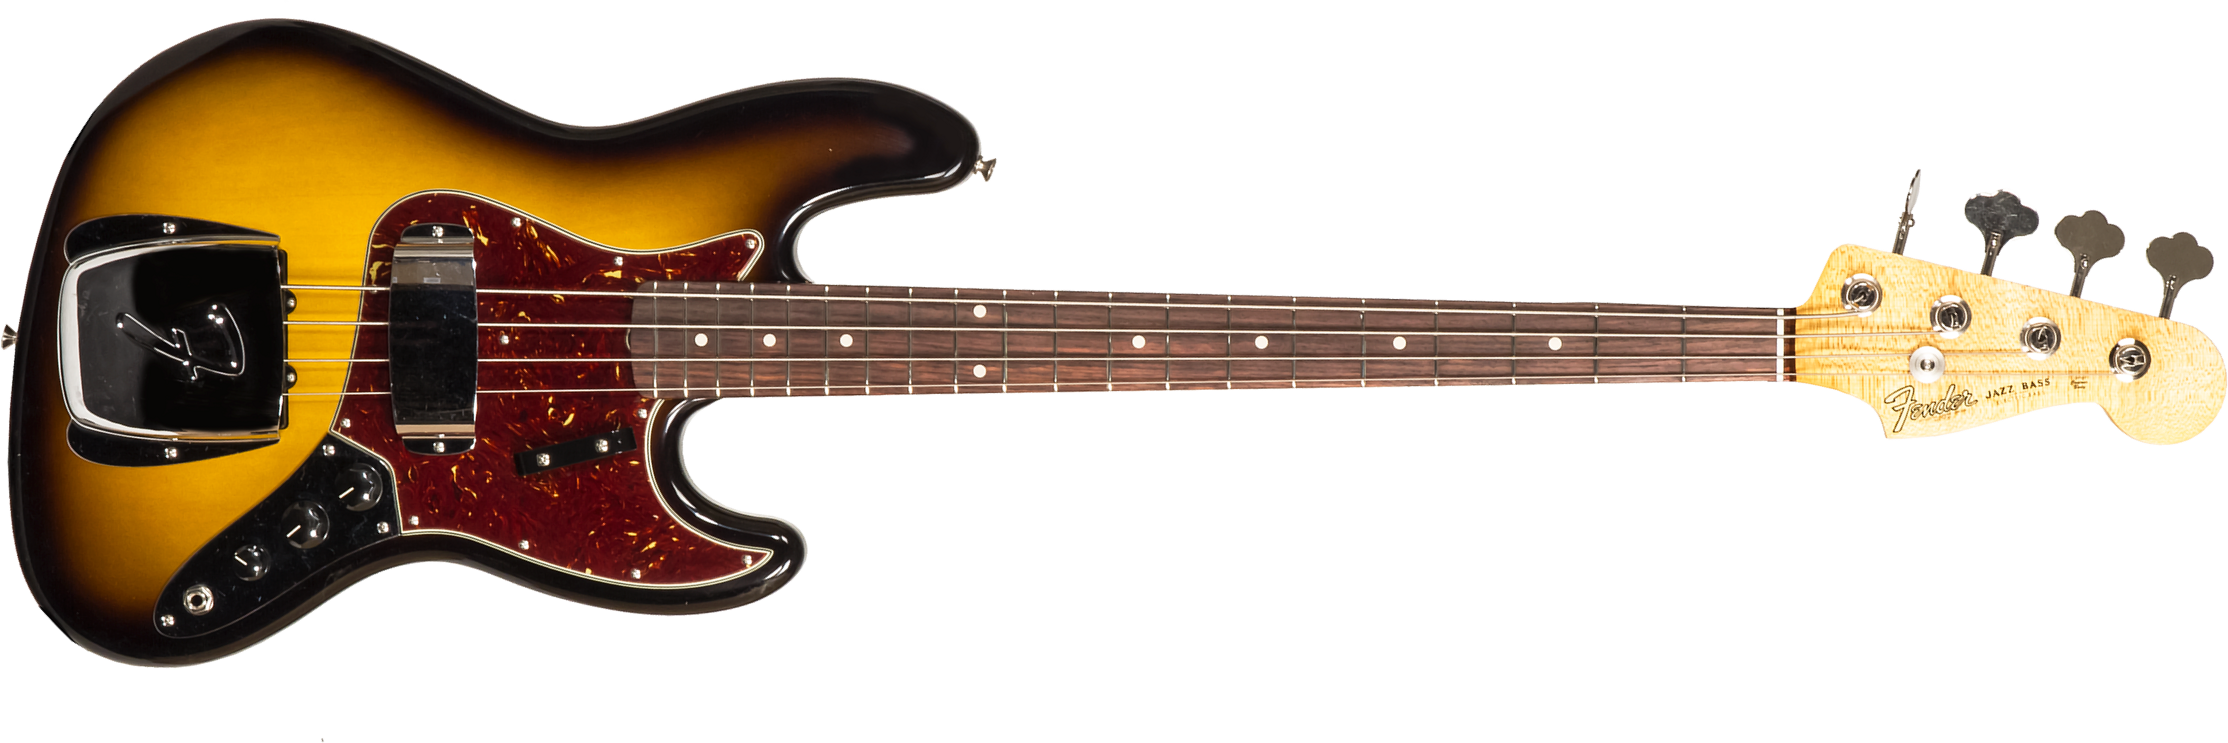 Fender Custom Shop Jazz Bass 1964 Rw #r126513 - Closet Classic 2-color Sunburst - Basse Électrique Solid Body - Main picture